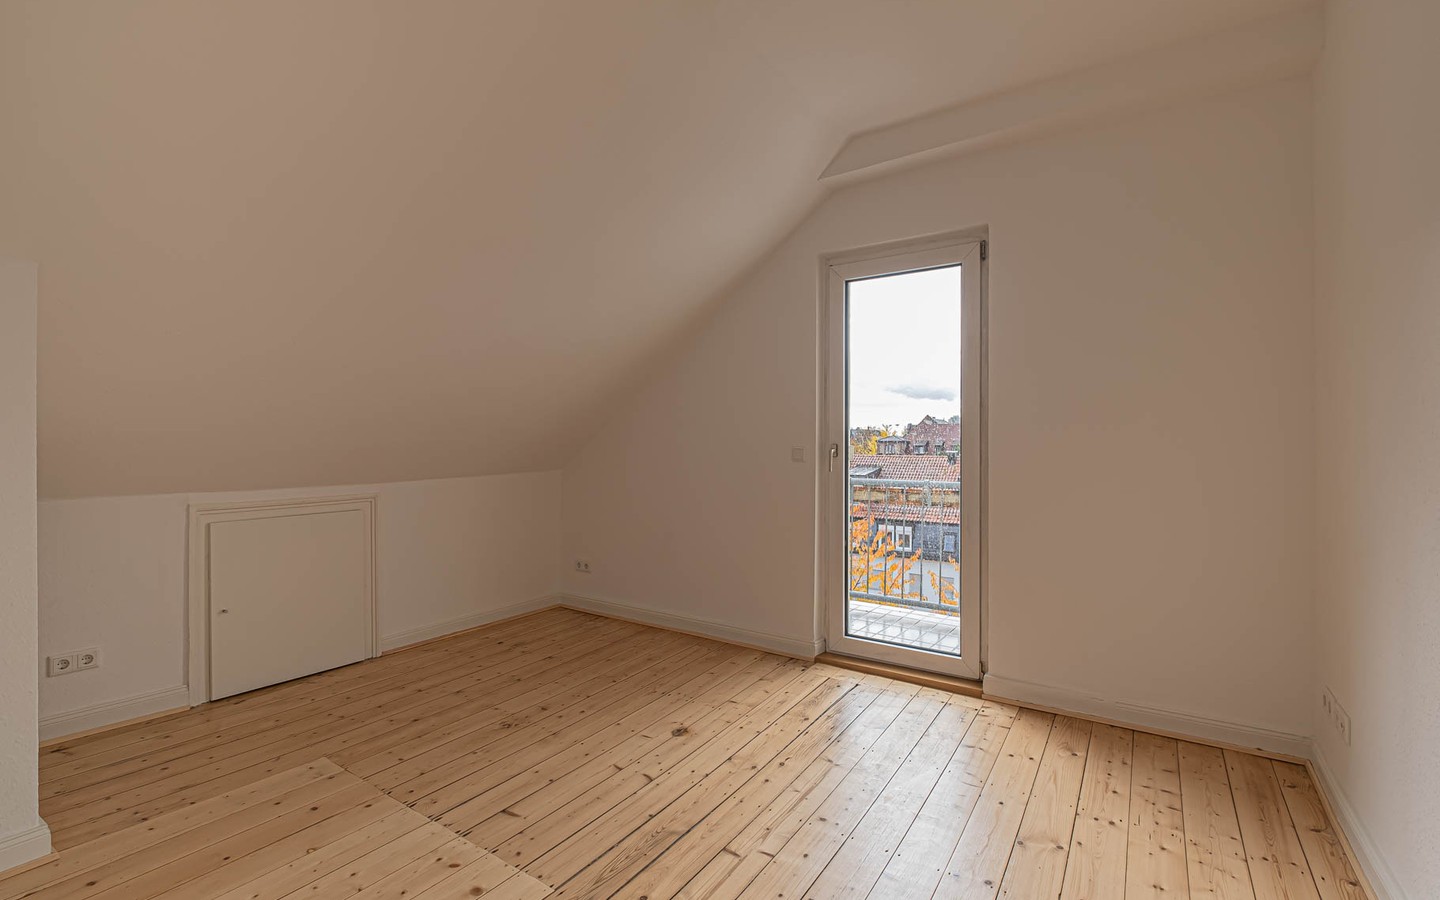 Wohnzimmer - Rarität – Dachgeschosswohnung mit Schlossblick -
 Ideal für kreative Singles oder Paare